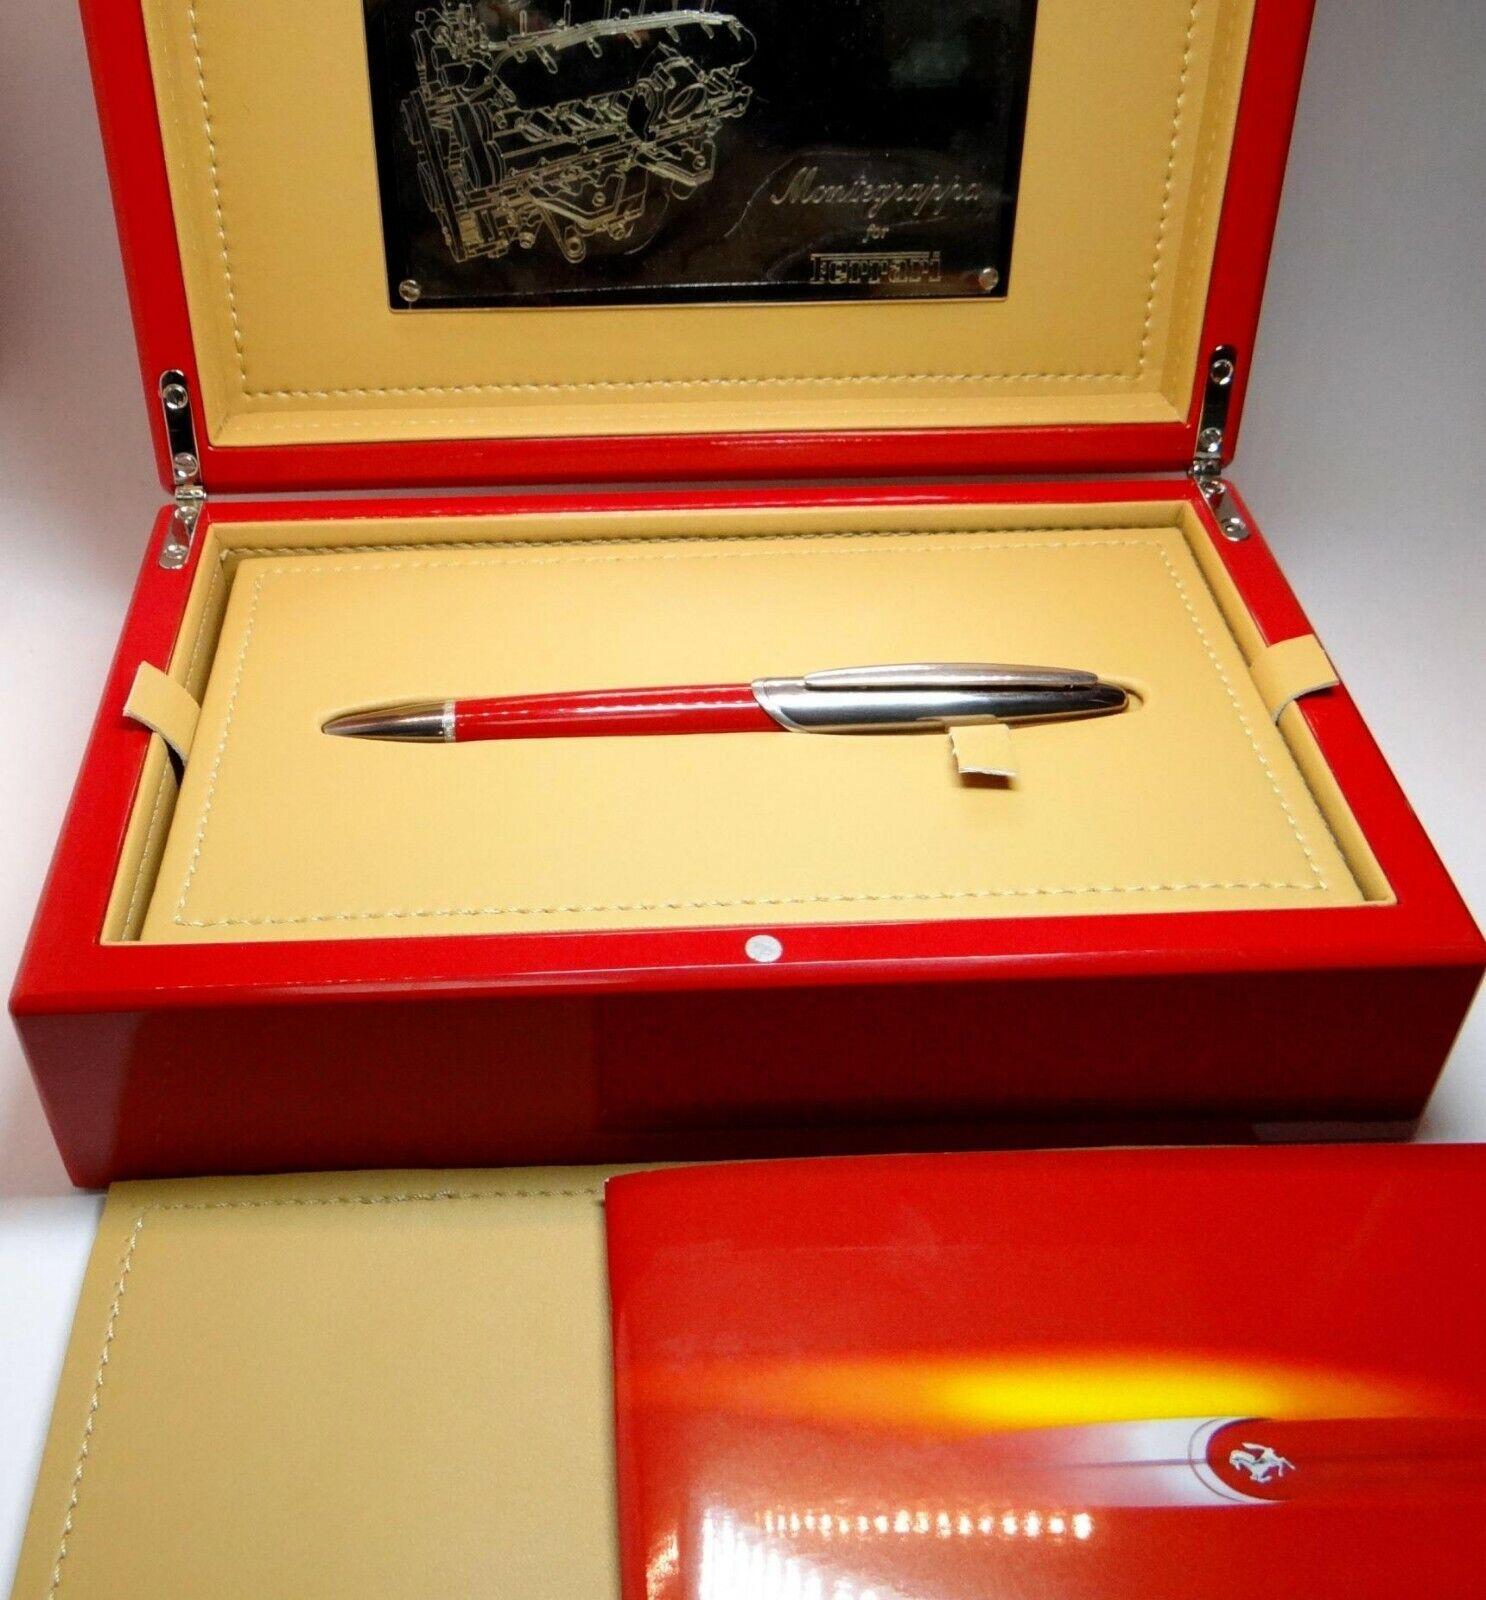 Original Montegrappa für Ferrari Füllfederhalter mit goldenem Schlüssel 18K Feder mit der Originalbox und Papieren. Die Tinte ist schwarz.
Stiftlänge: 15,5 cm oder 6,1 Zoll. 
Der Artikel ist aus Vorbesitz und in ausgezeichnetem Zustand.